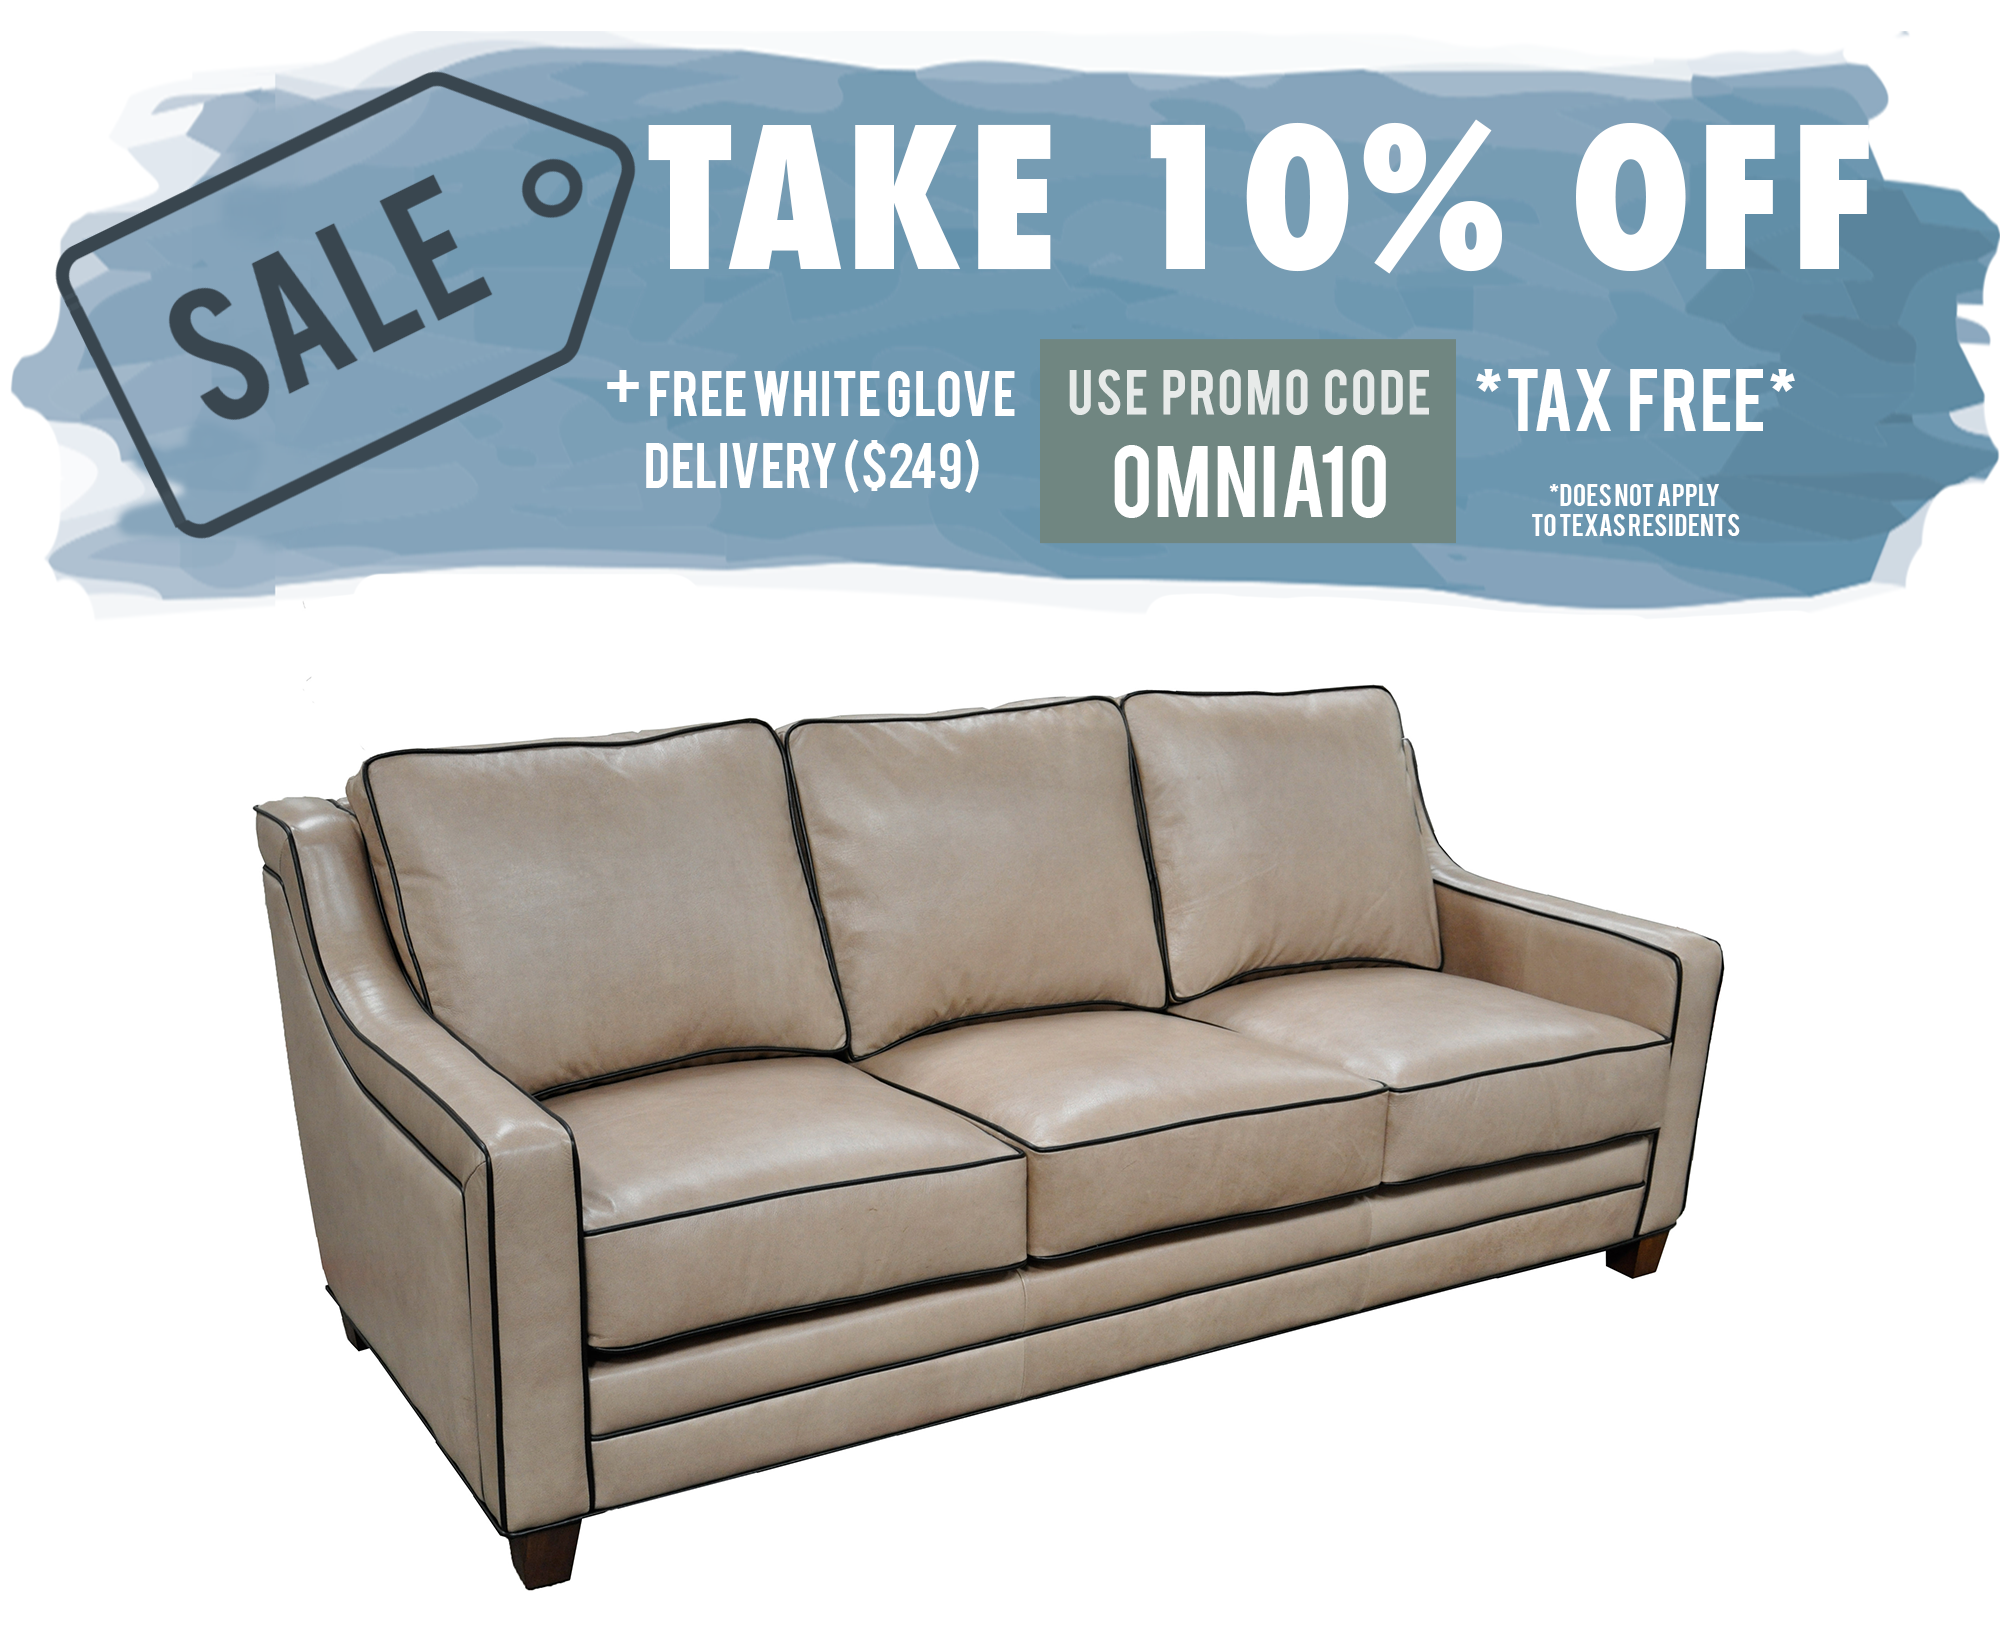 Omnia Times Square Sofa - Leather Furniture